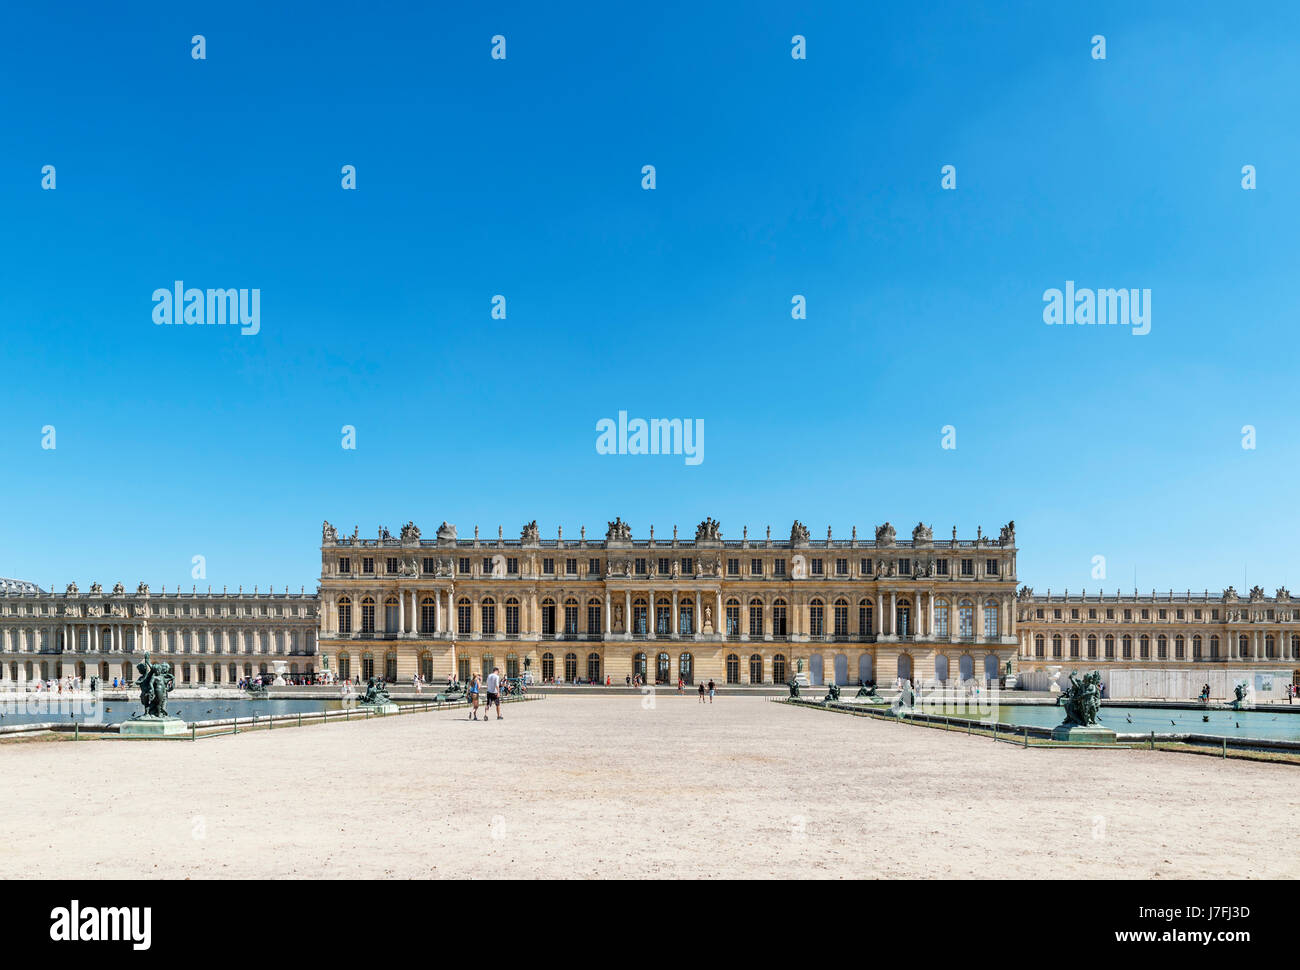 Vue arrière du château de Versailles (château de Versailles), près de Paris, France Banque D'Images